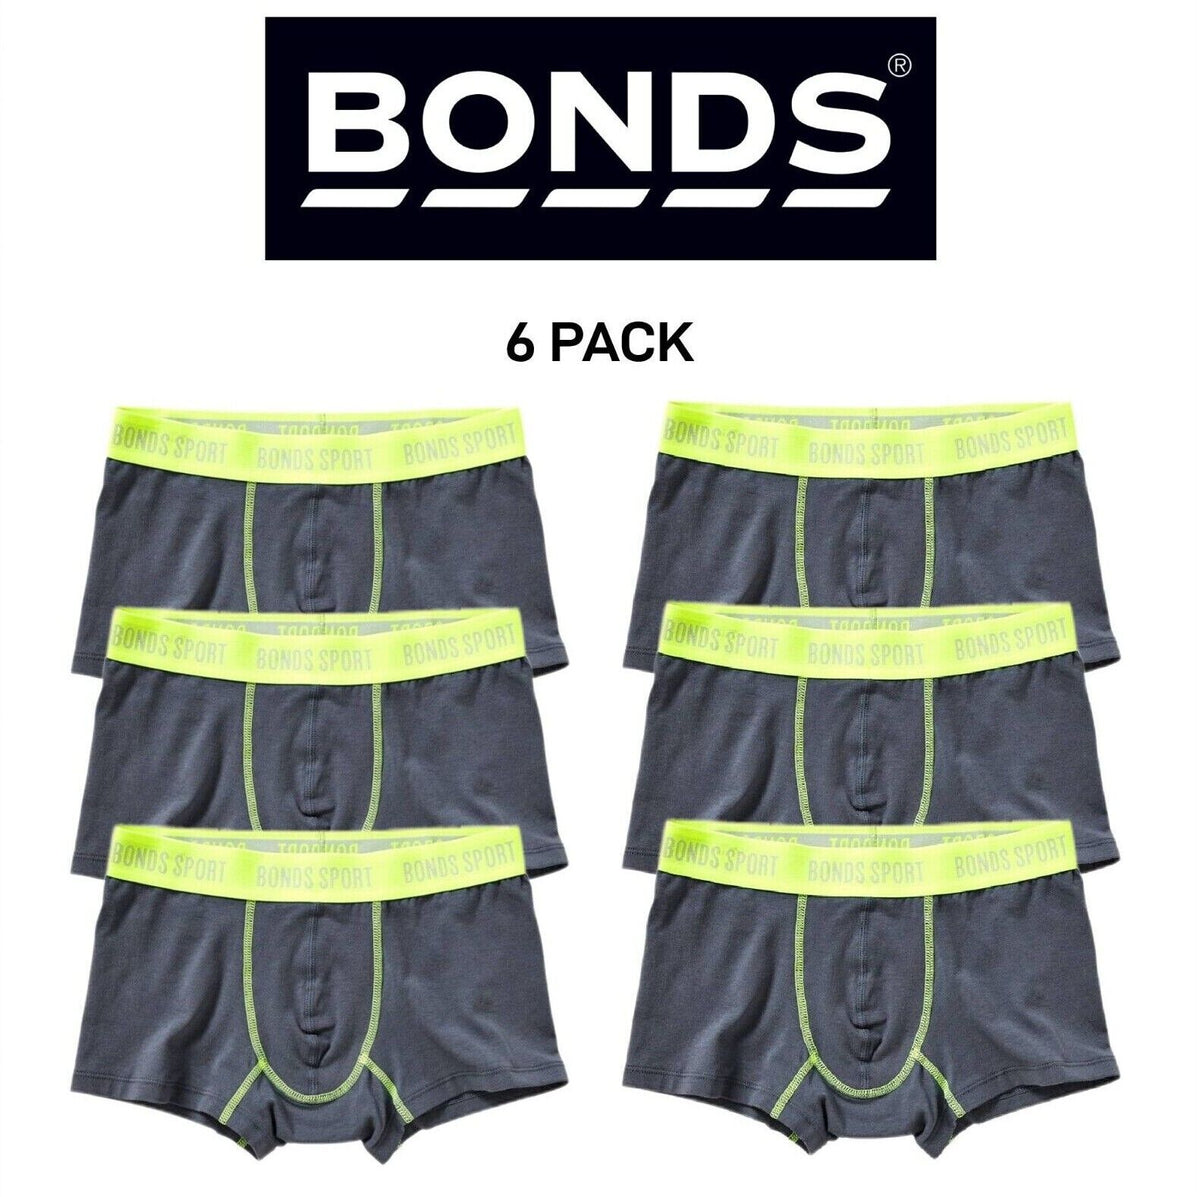 Bonds Boys Sport Cool Wear Undies Underwear Brief Boxer Shorts 6 Pack UY3G1A